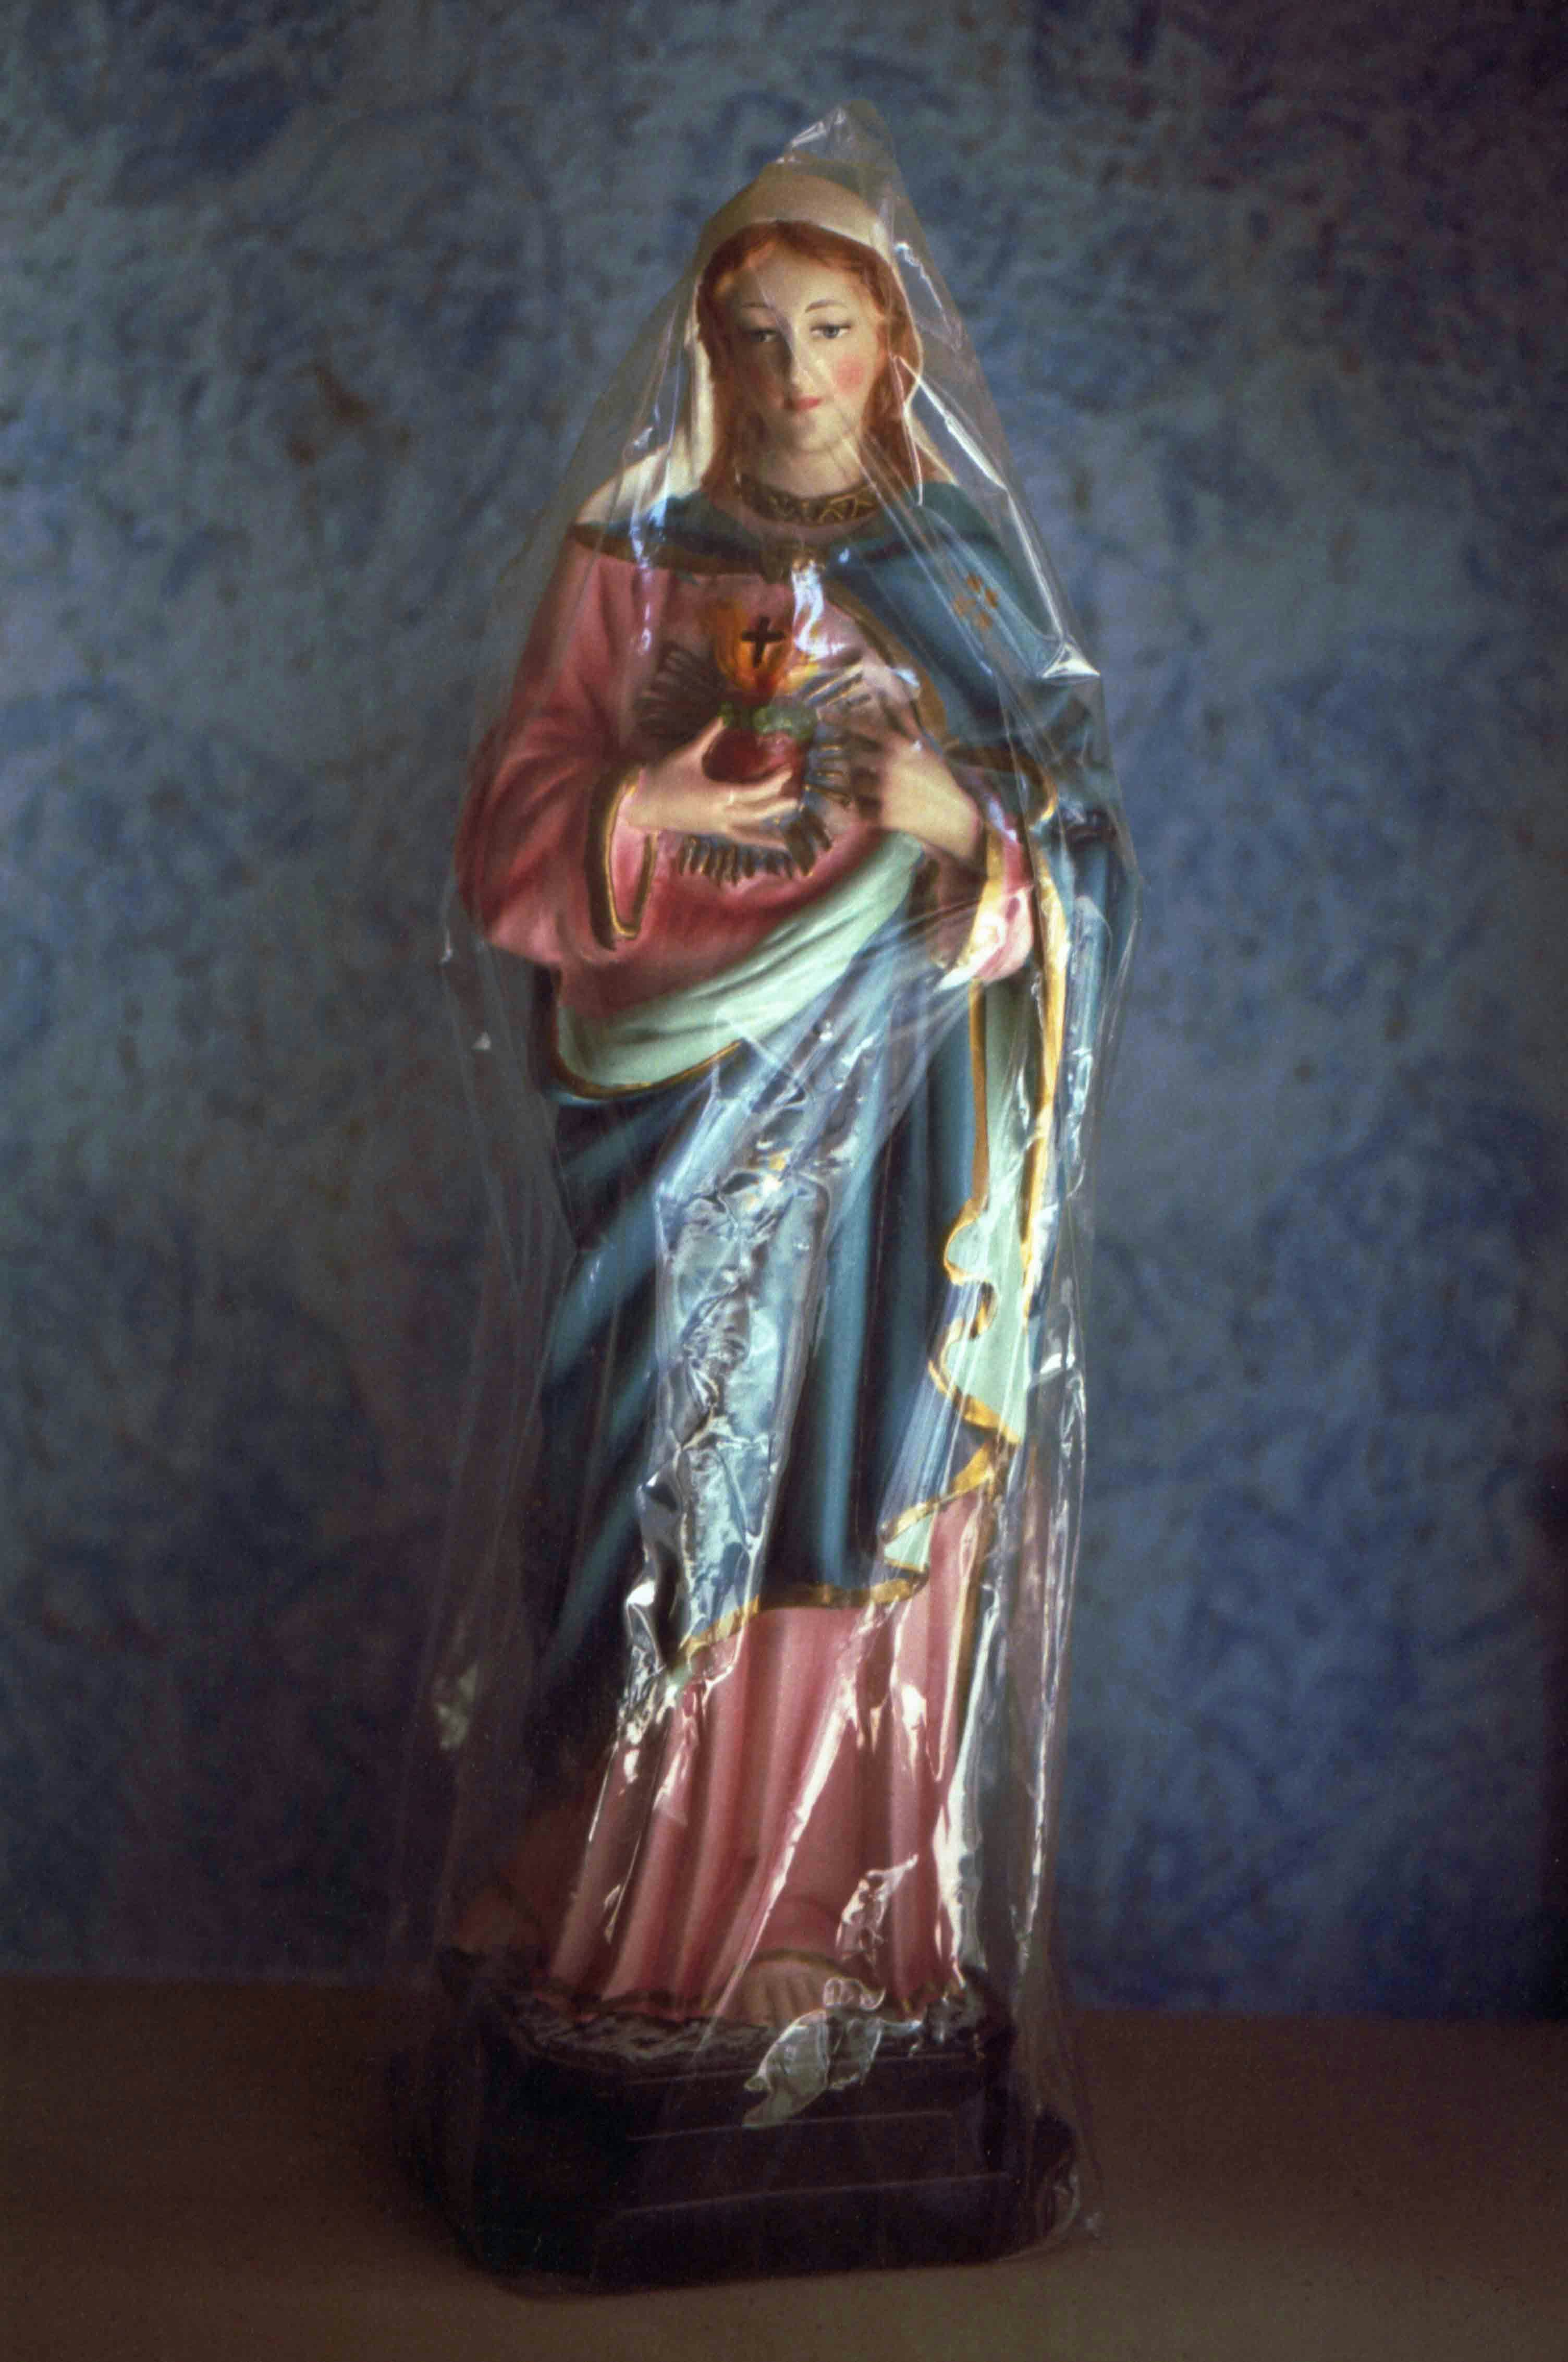 Religious sculpture wrapped in plastic © Marisol Mendez